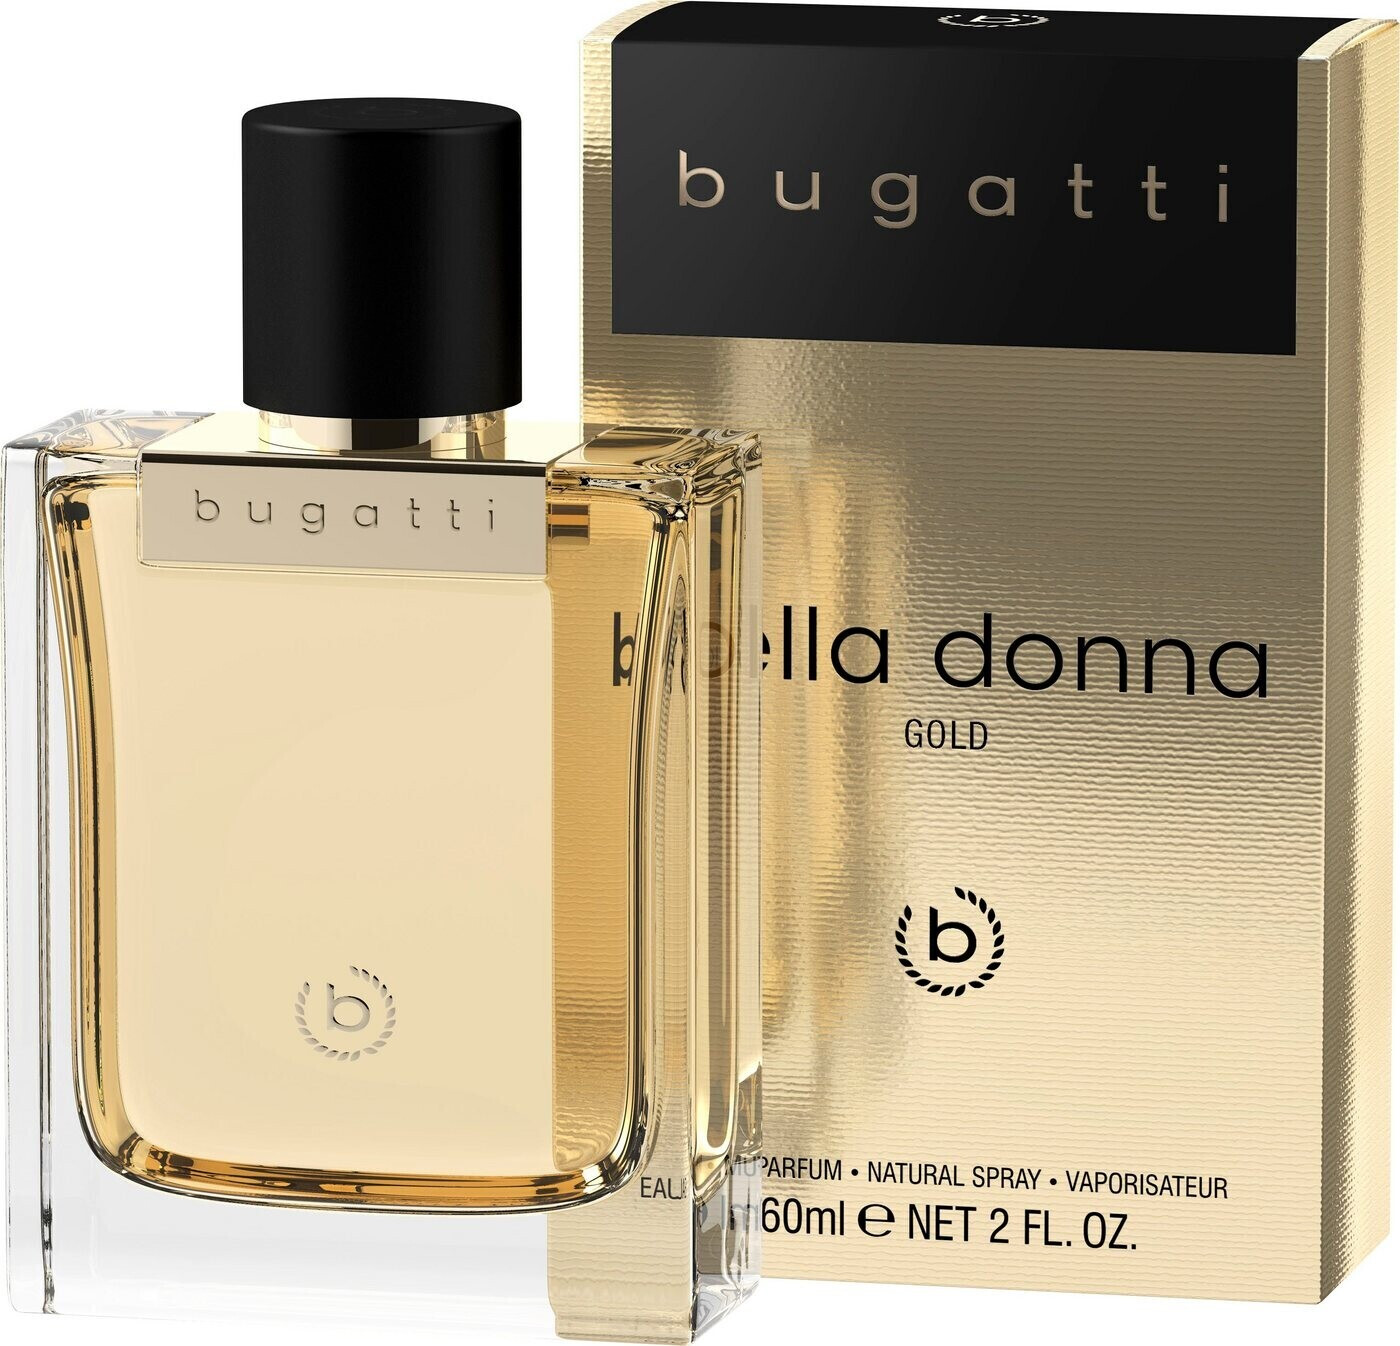 Bugatti Bella Donna Gold | ab Eau bei Parfum € Preisvergleich de 16,99 (60ml)